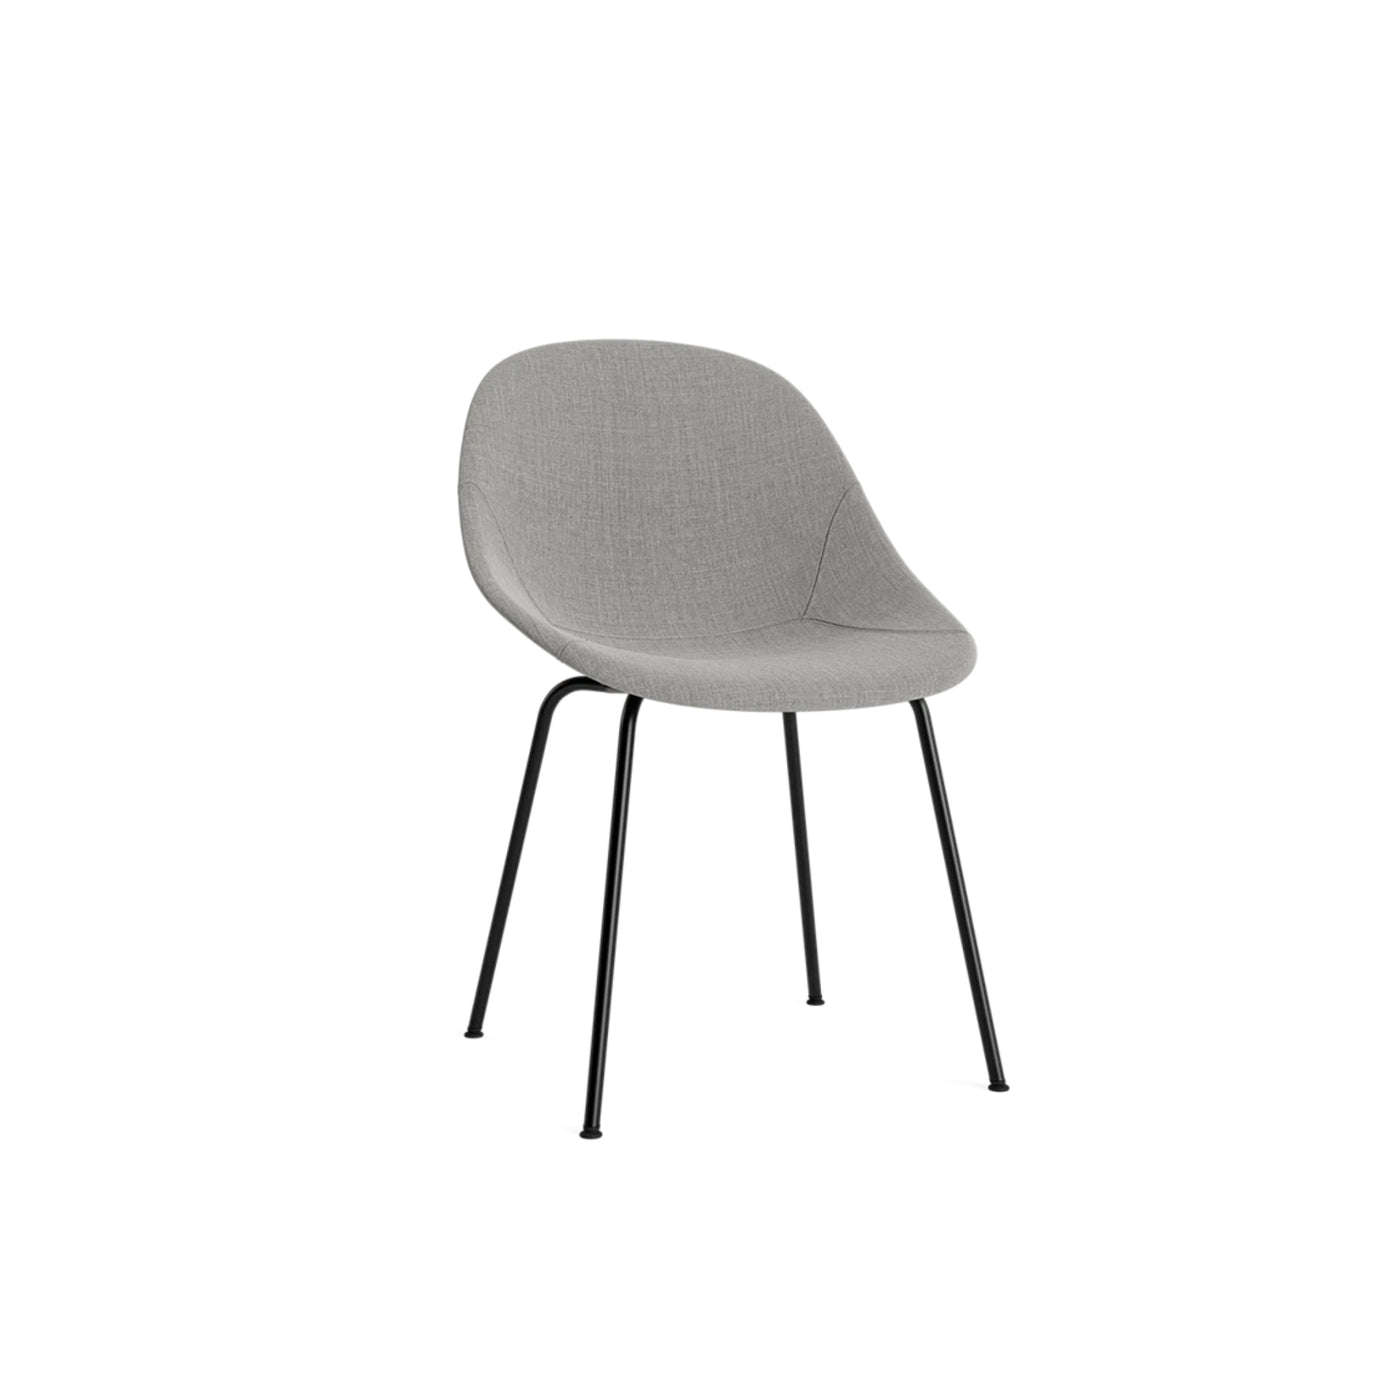 Normann Copenhagen Mat Chair at someday designs. #colour_remix-133